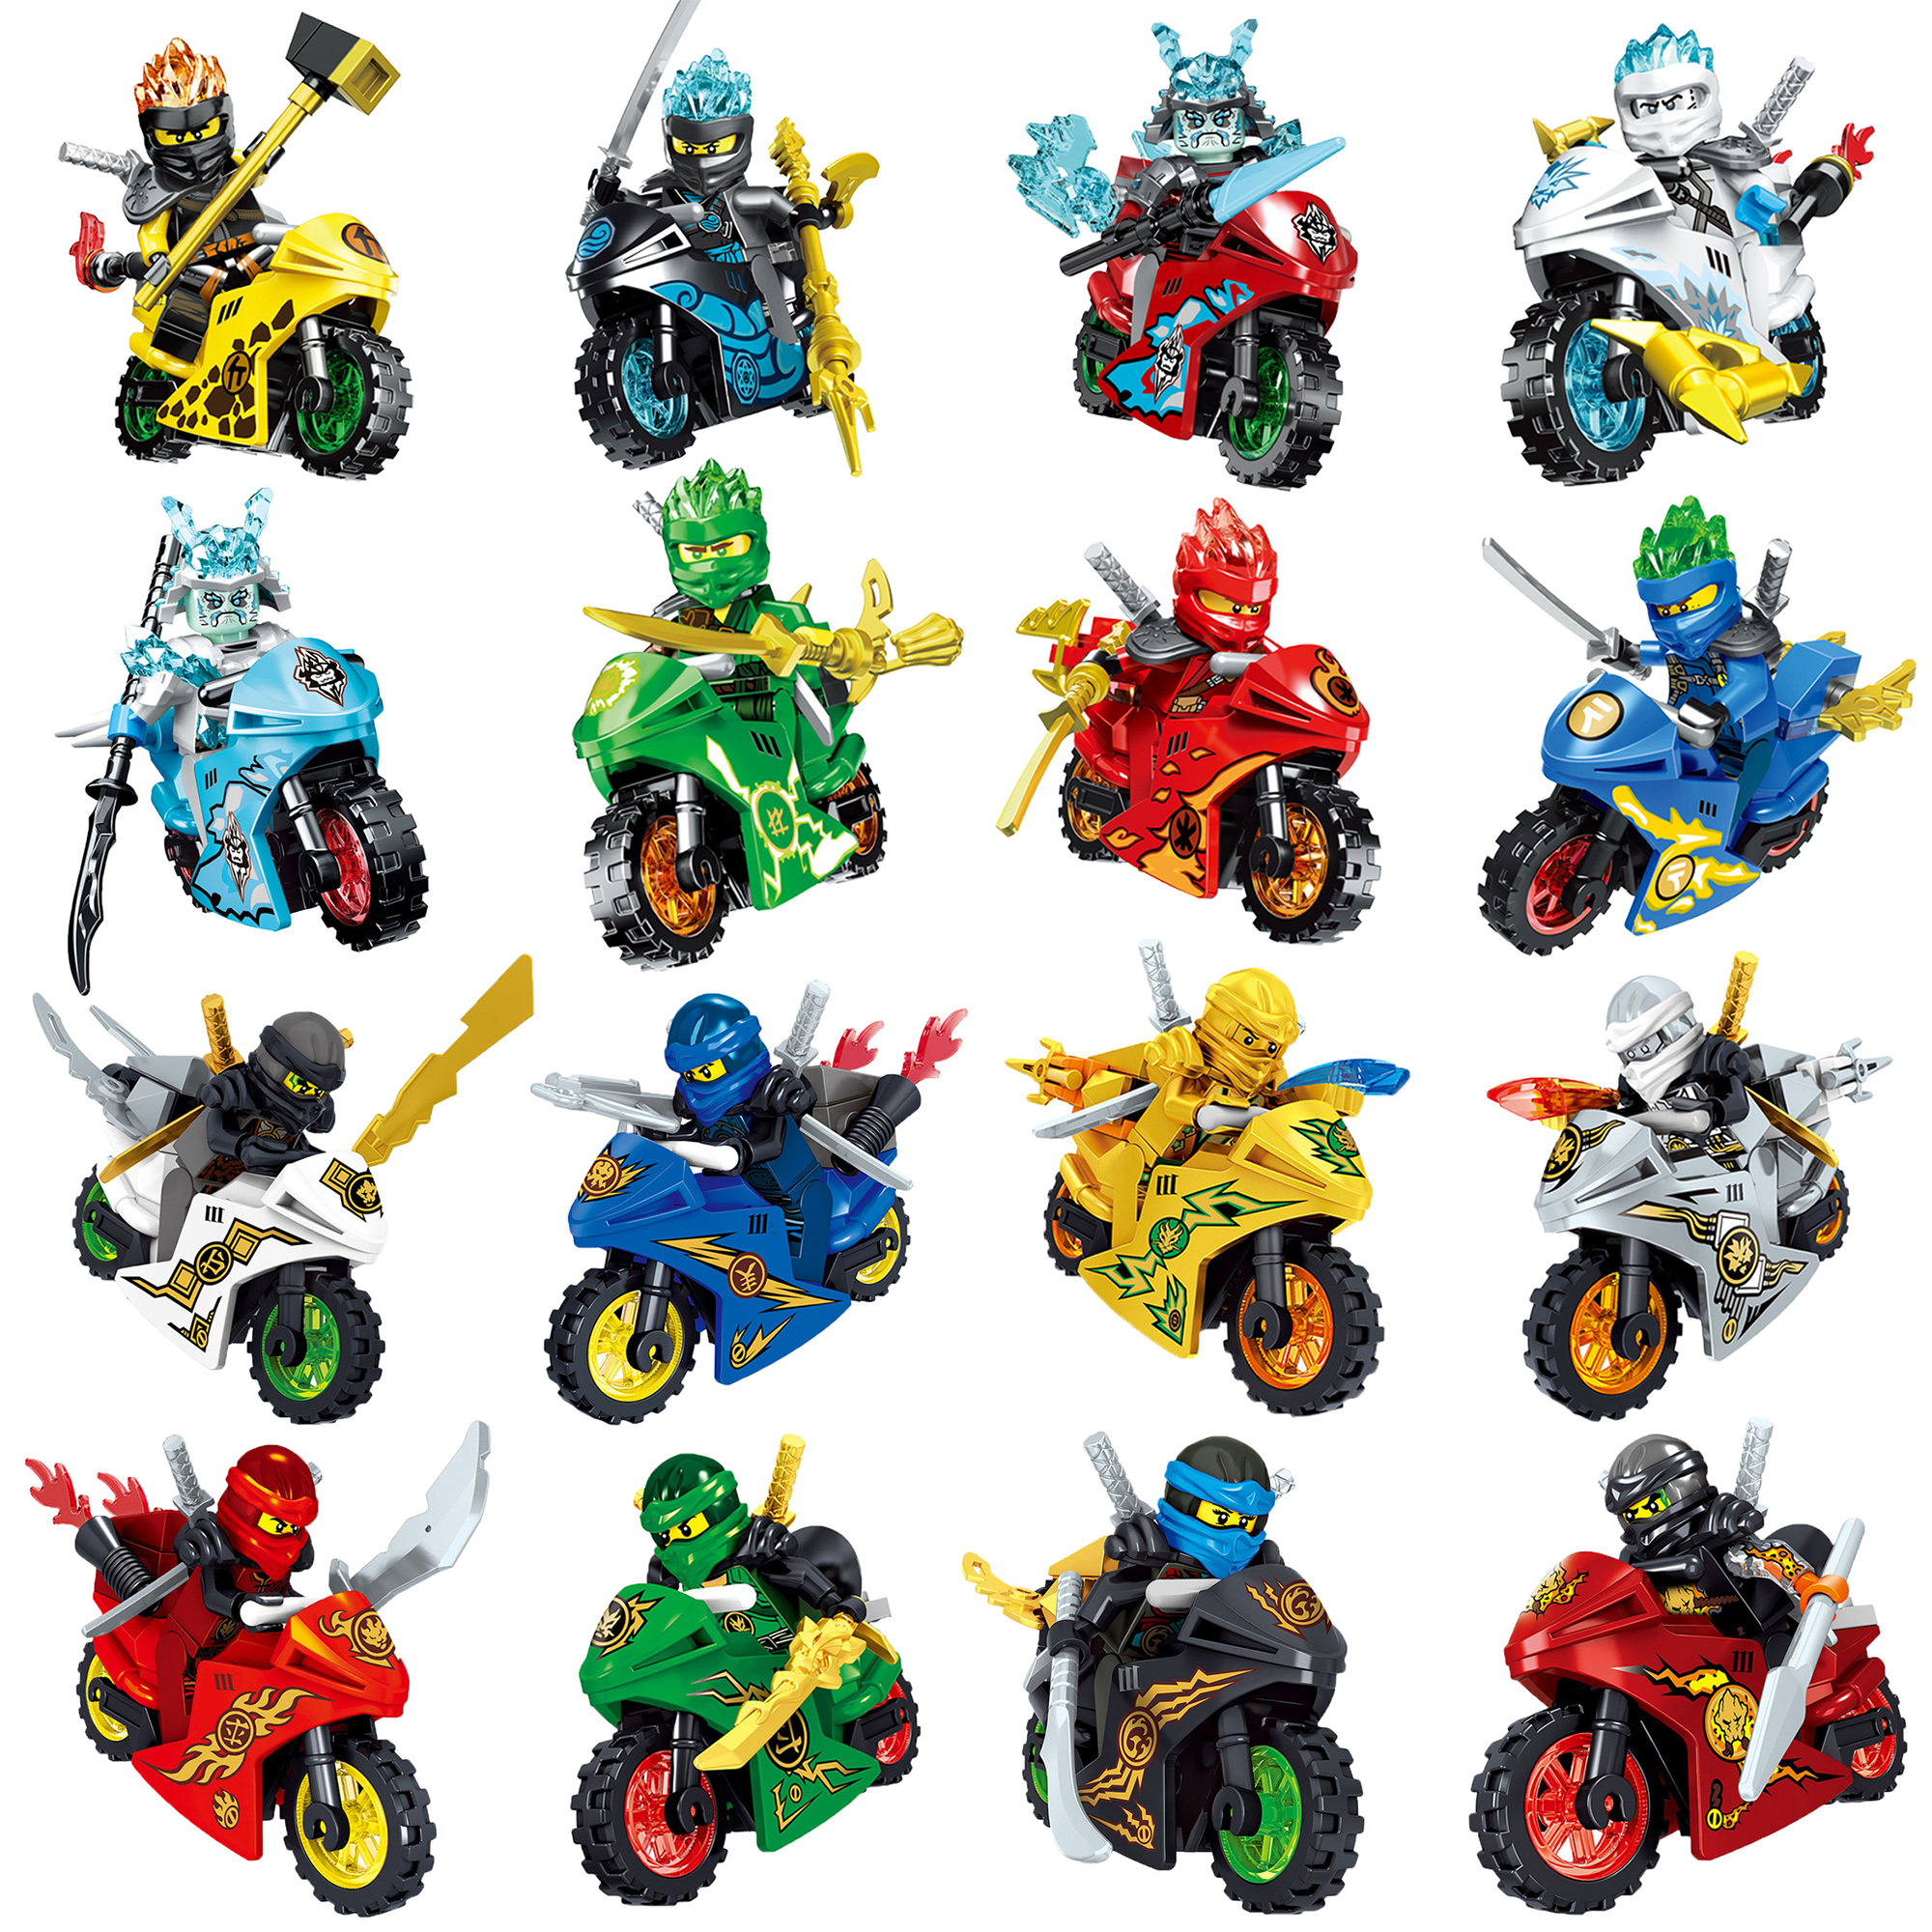 2023兼容乐高小人仔全套限量幻影系列摩托车黄金忍者拼装男孩子。